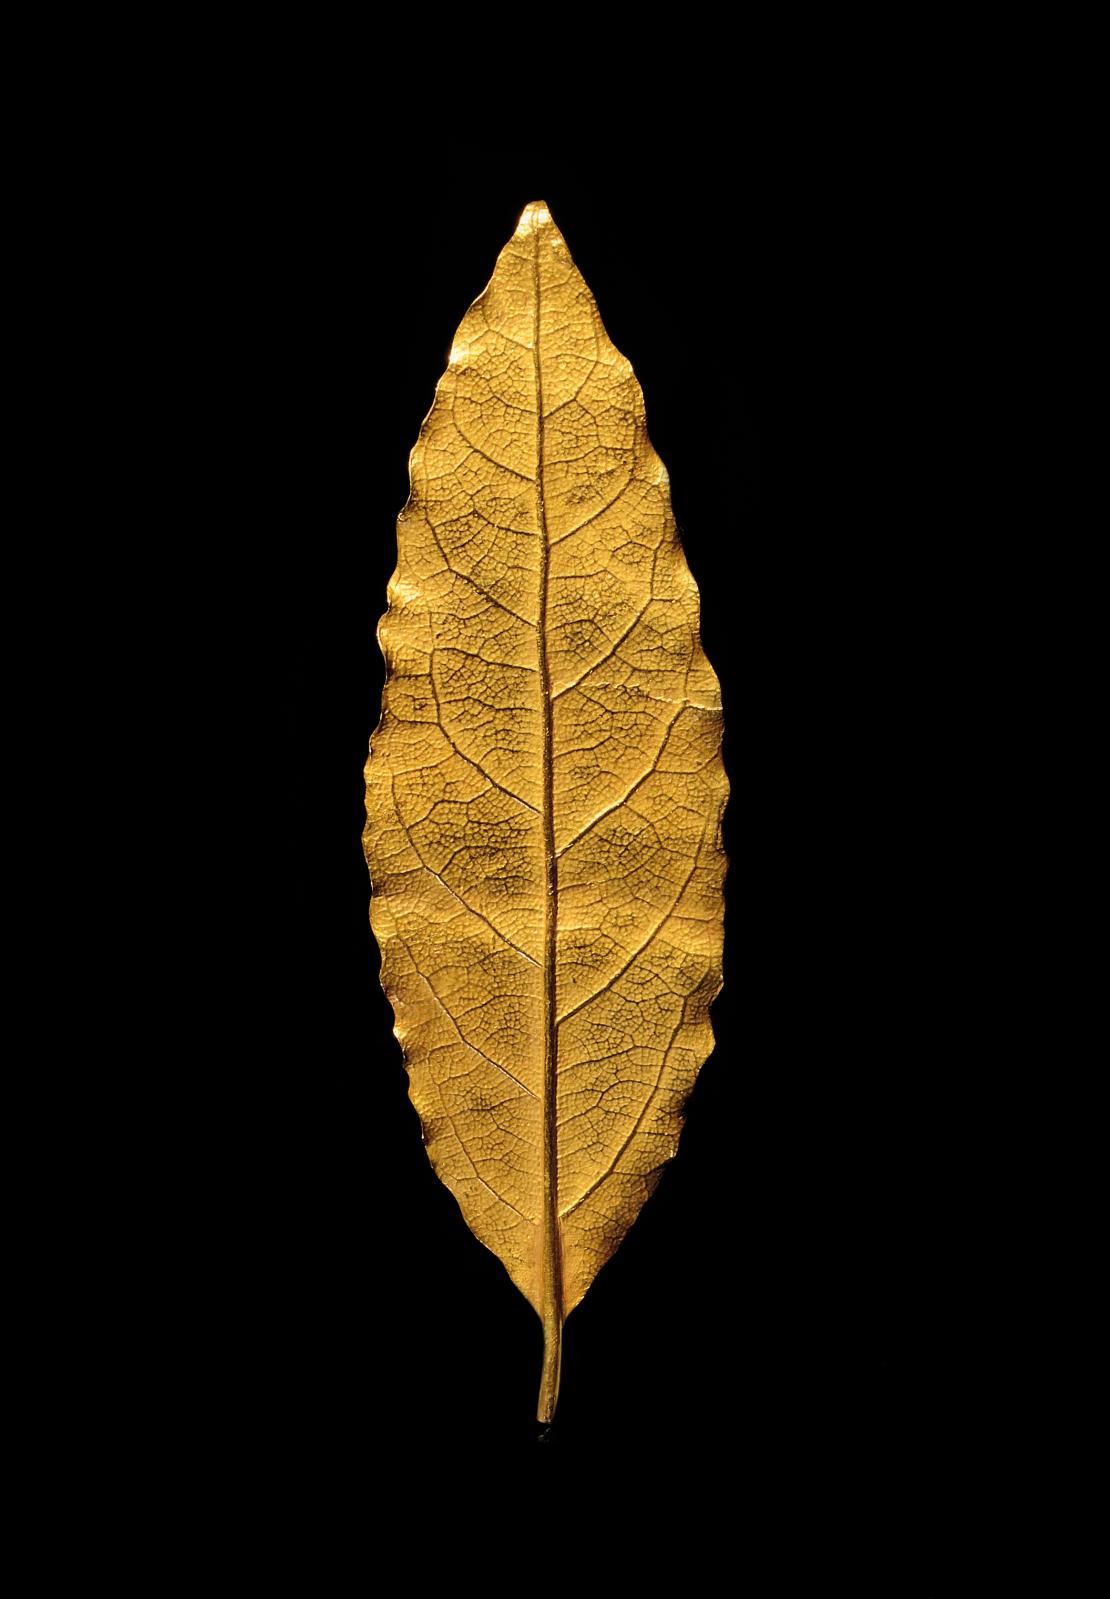 Martin Guillaume Biennais (1764-1843), feuille de laurier en or provenant de la couronne de sacre de Napoléon Ier, 1804, l. 9,2 cm, poids 